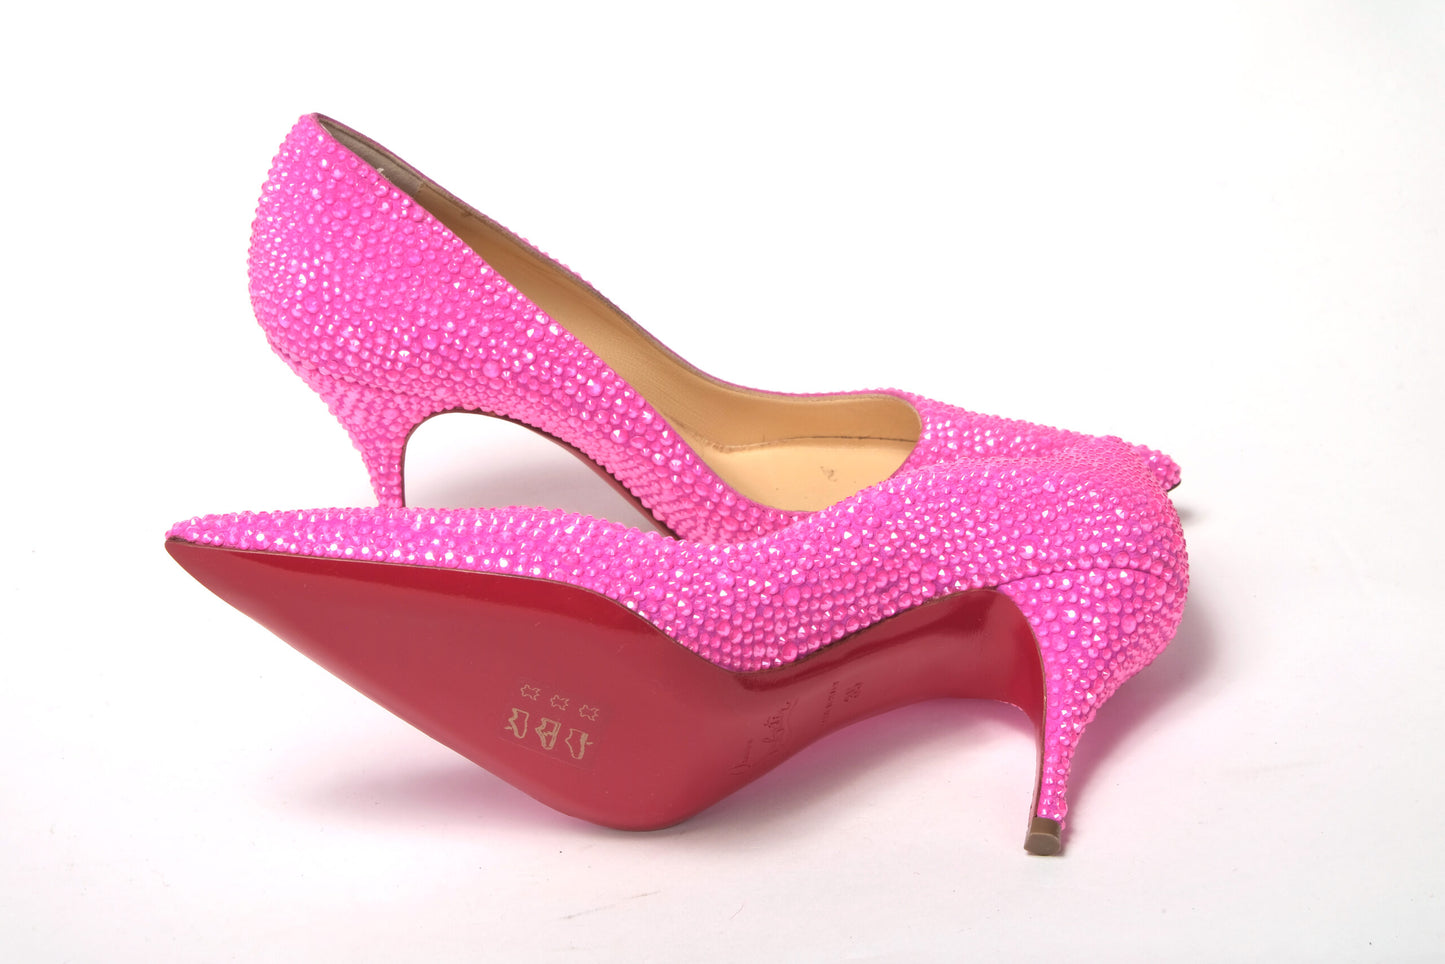 Hot Pink Embellished High Heels Pumps